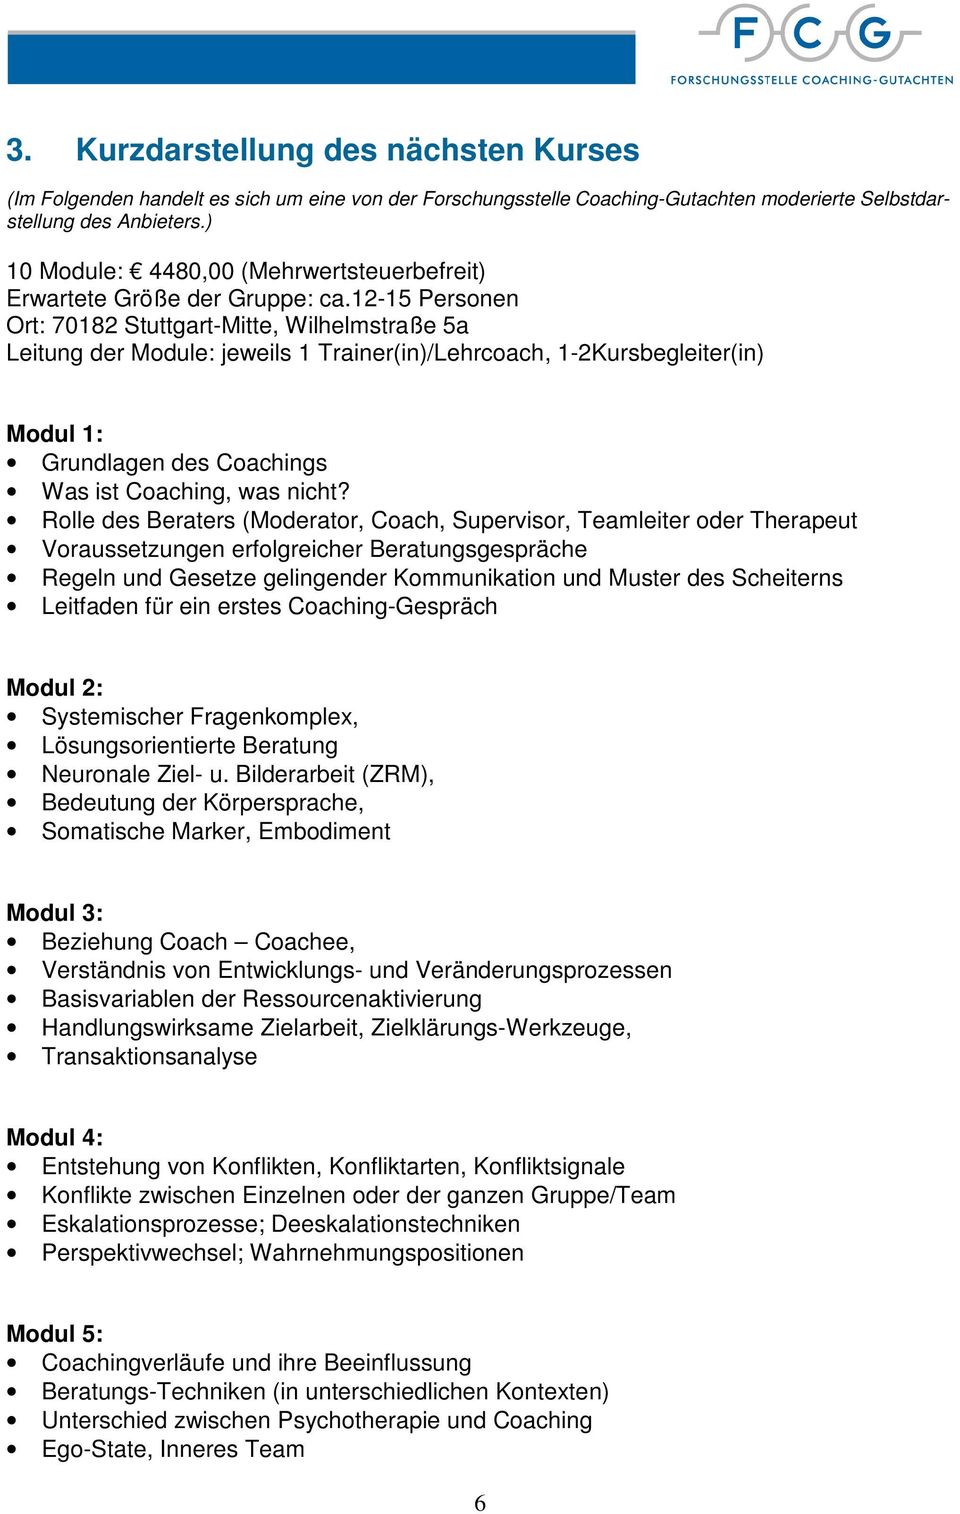 12-15 Personen Ort: 70182 Stuttgart-Mitte, Wilhelmstraße 5a Leitung der Module: jeweils 1 Trainer(in)/Lehrcoach, 1-2Kursbegleiter(in) Modul 1: Grundlagen des Coachings Was ist Coaching, was nicht?